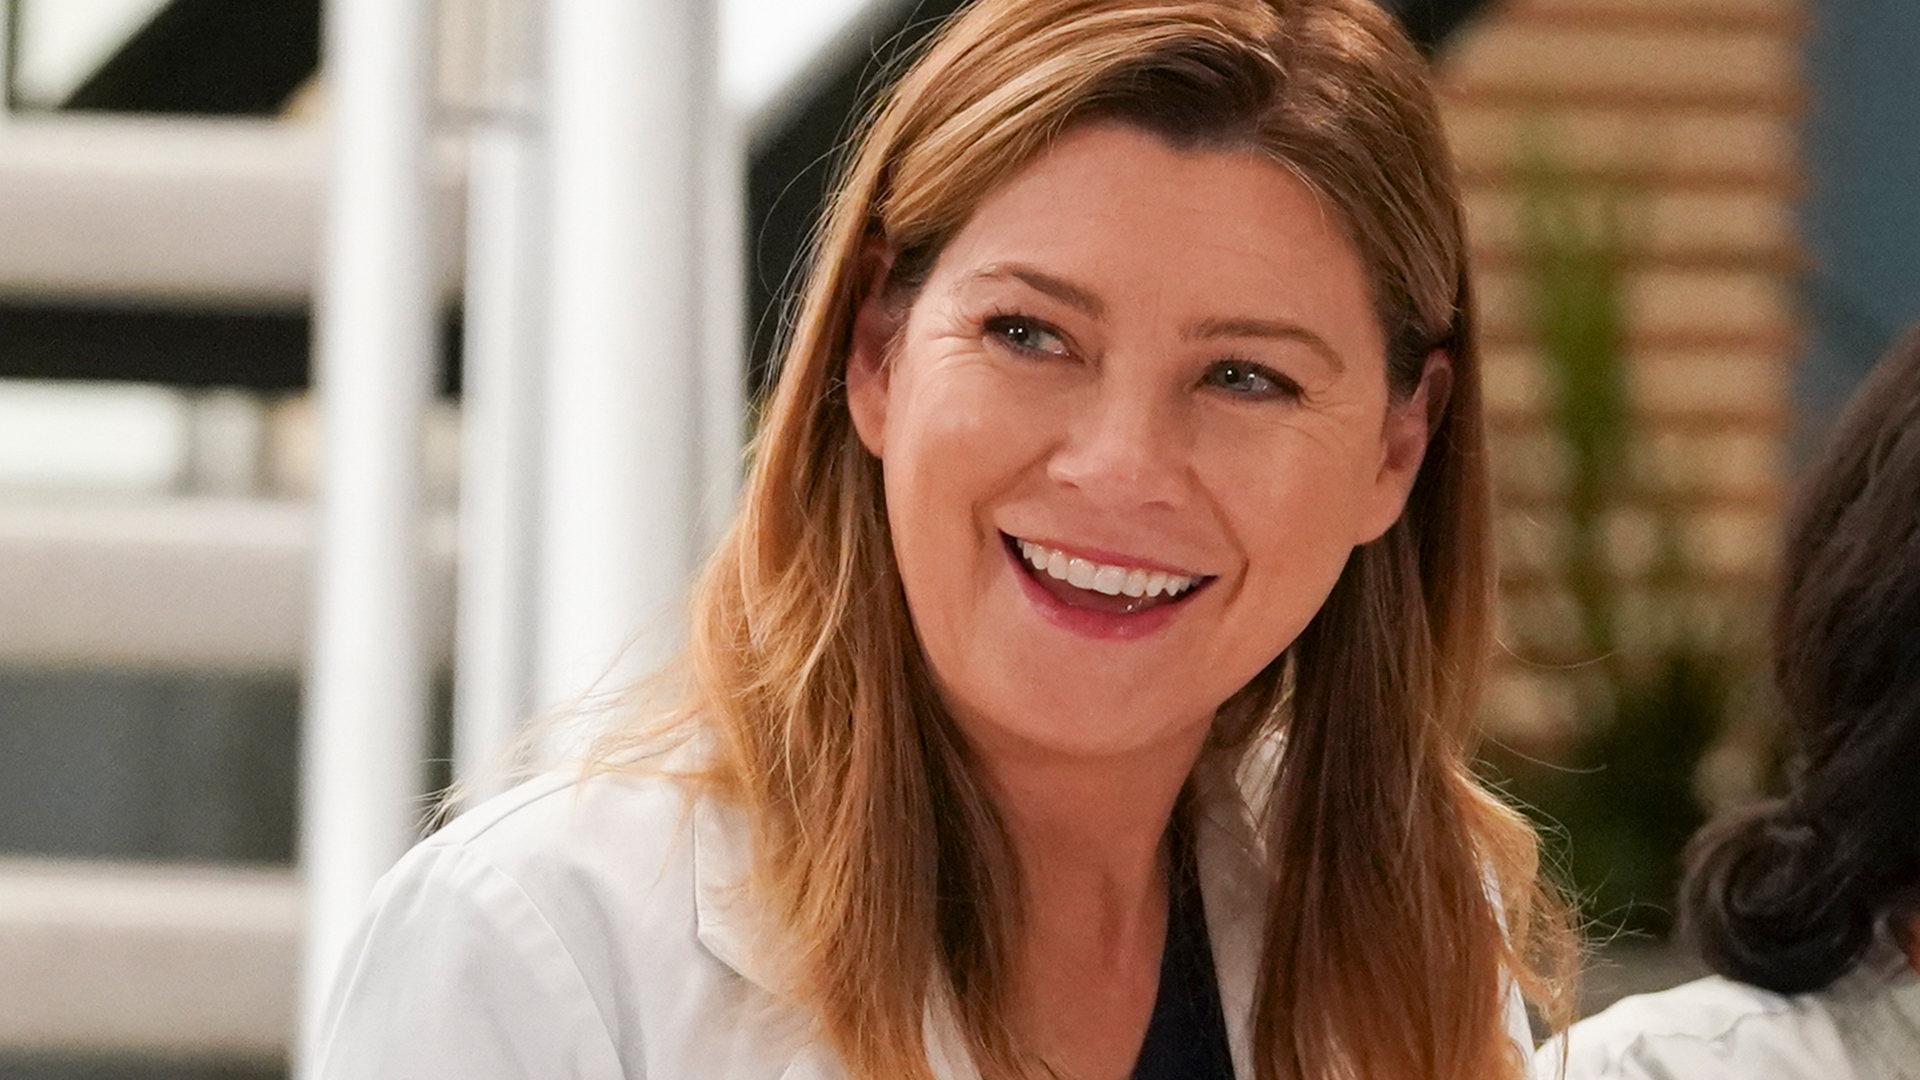 Ellen Pompeo as Meredith Grey smiling in ‘Grey’s Anatomy’ Season 16, ‘A Diagnosis’